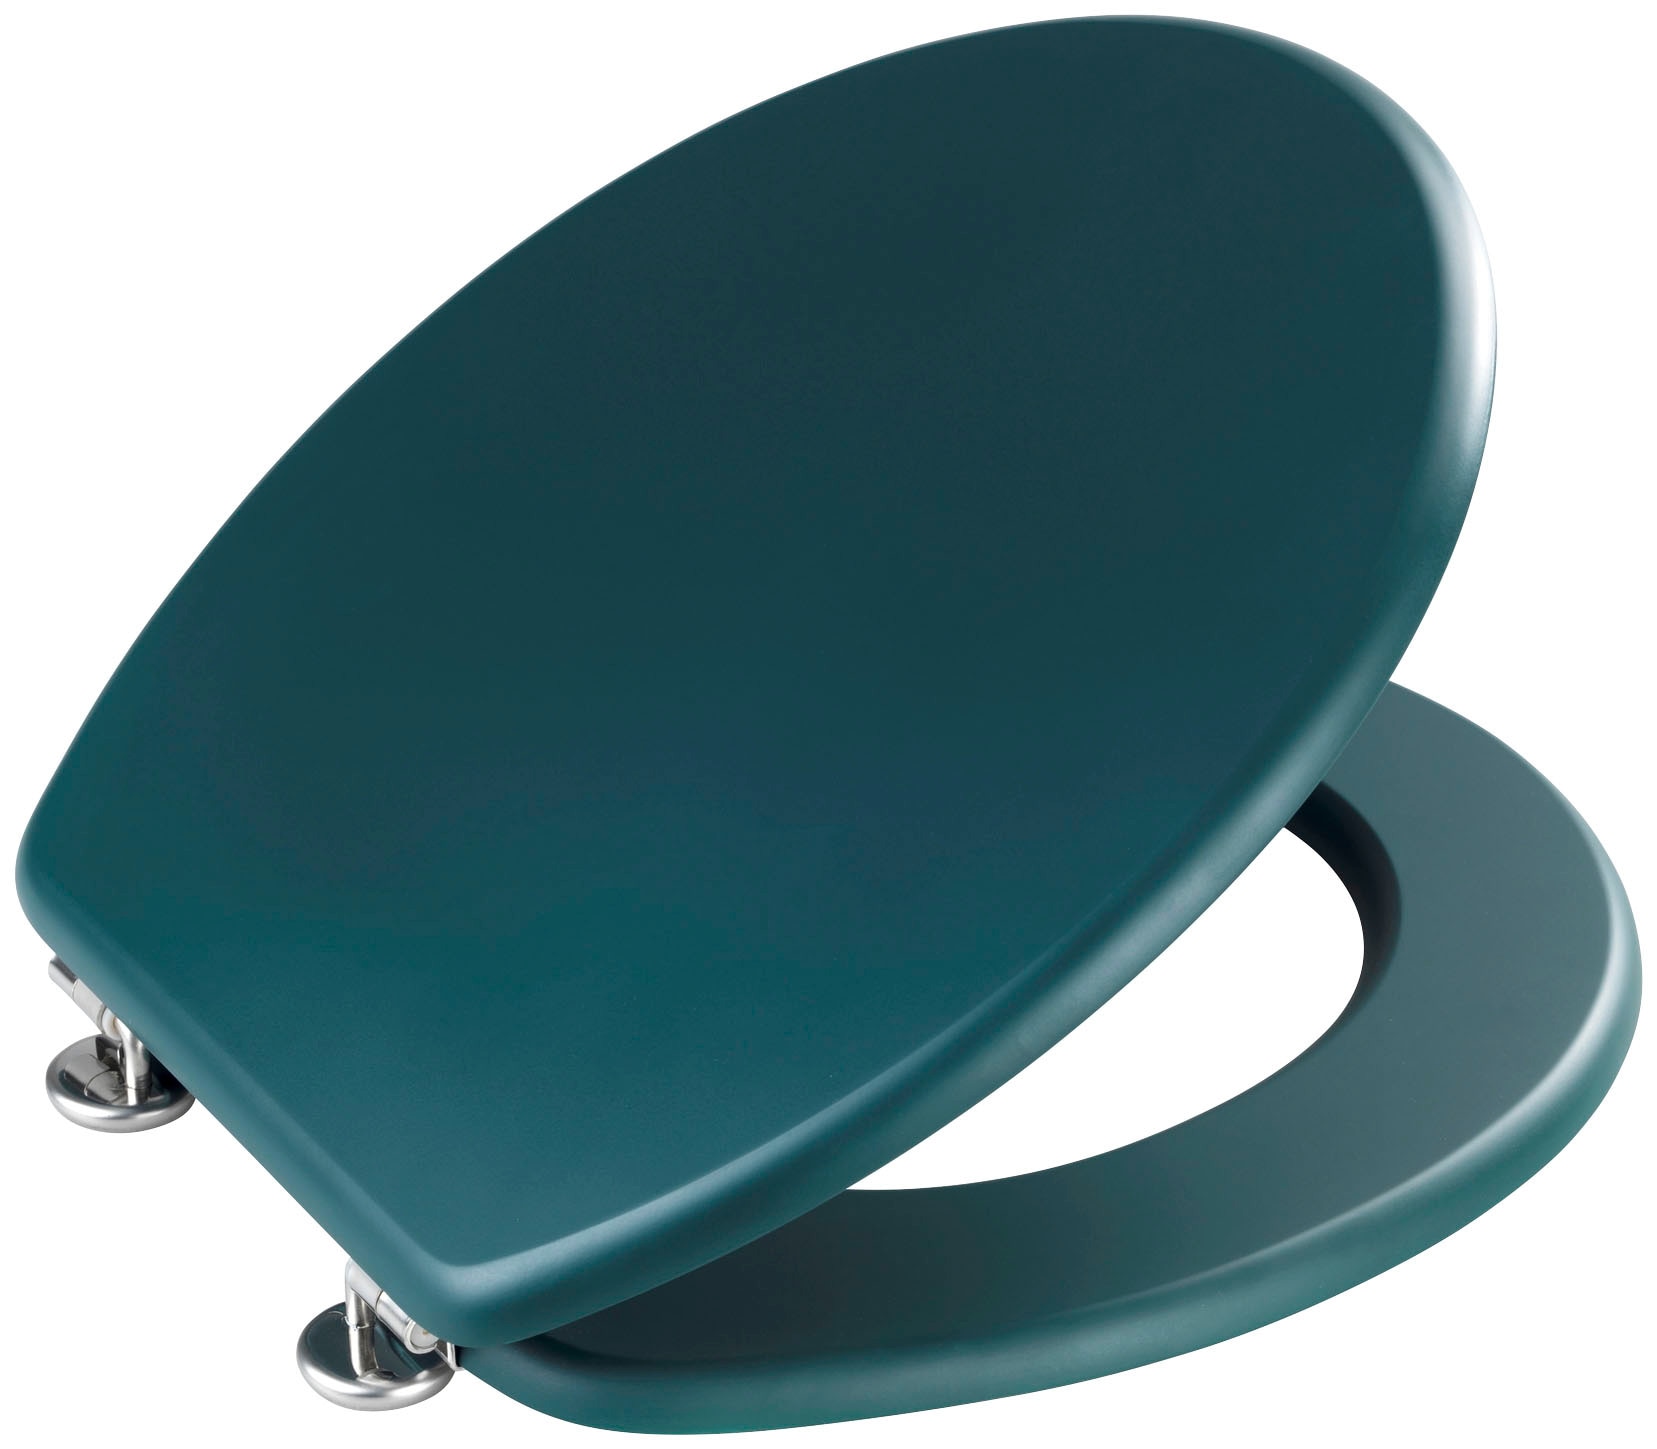 WENKO WC-Sitz »Prima«, dunkelgrün matt, aus MDF gefertigt, feuchtigkeitsresistent